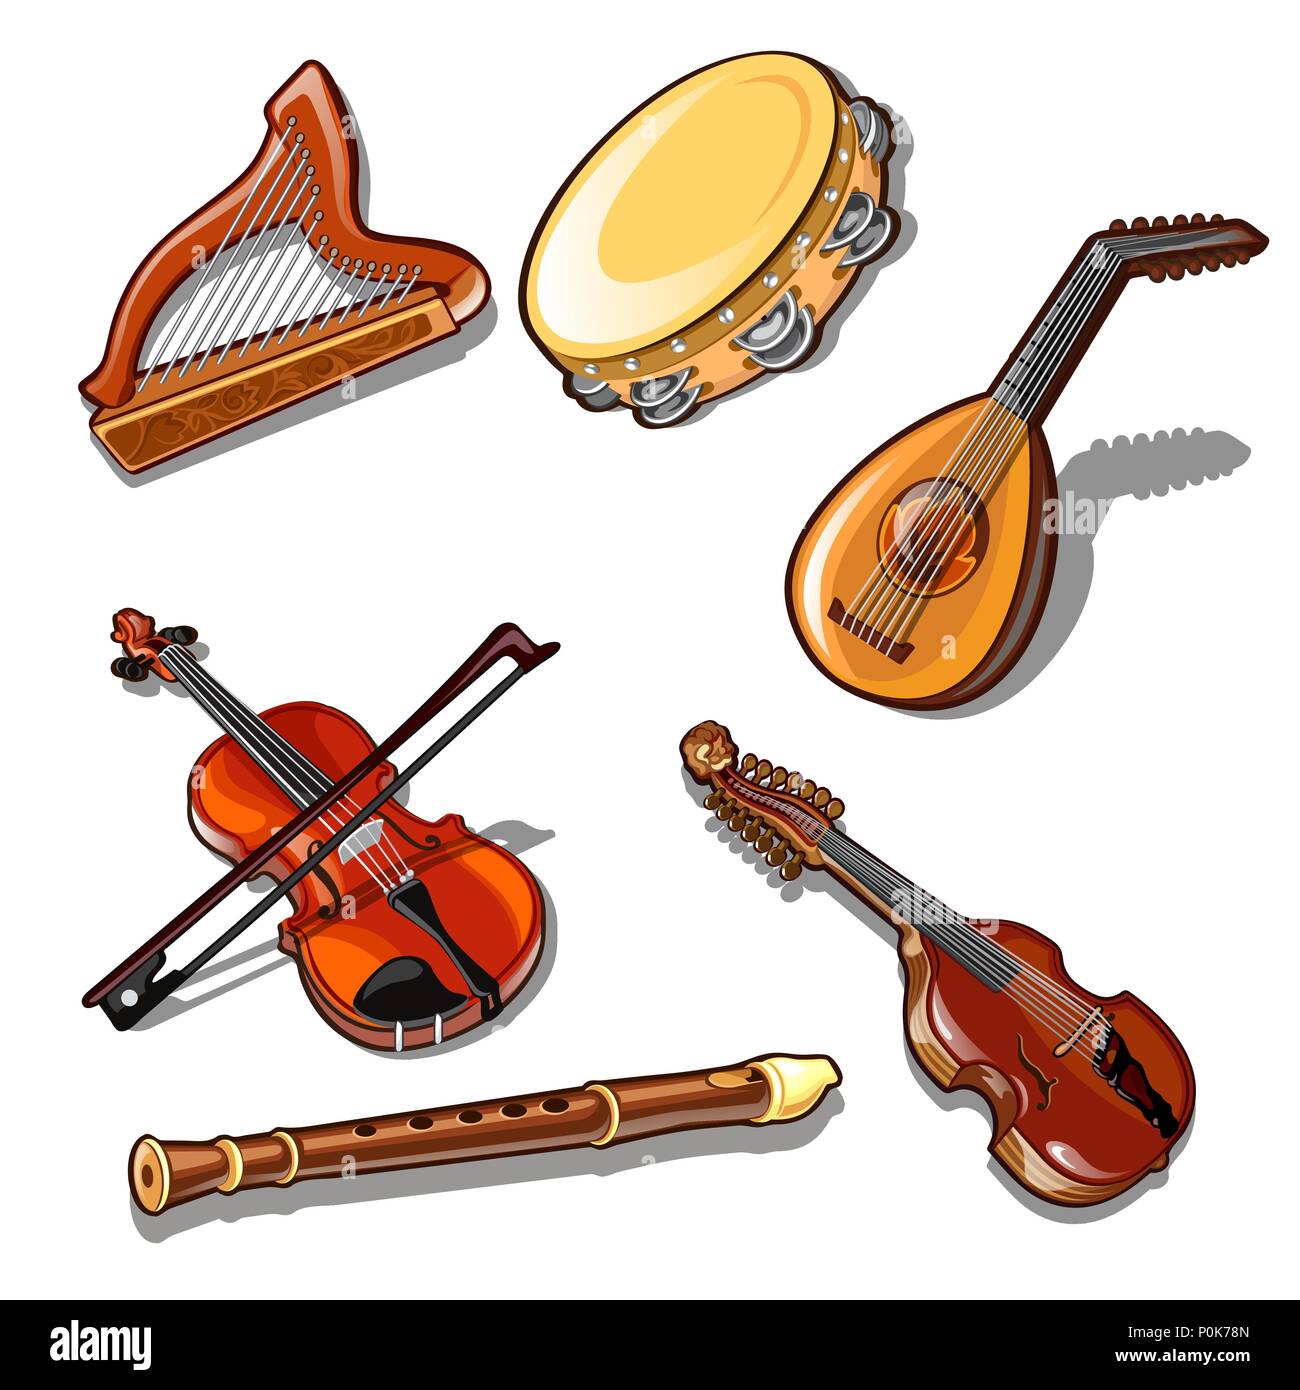 Eine Reihe von klassischen Streichern, Schlagzeug und wind Musikinstrumente auf weißem Hintergrund. Vector Illustration. Stock Vektor